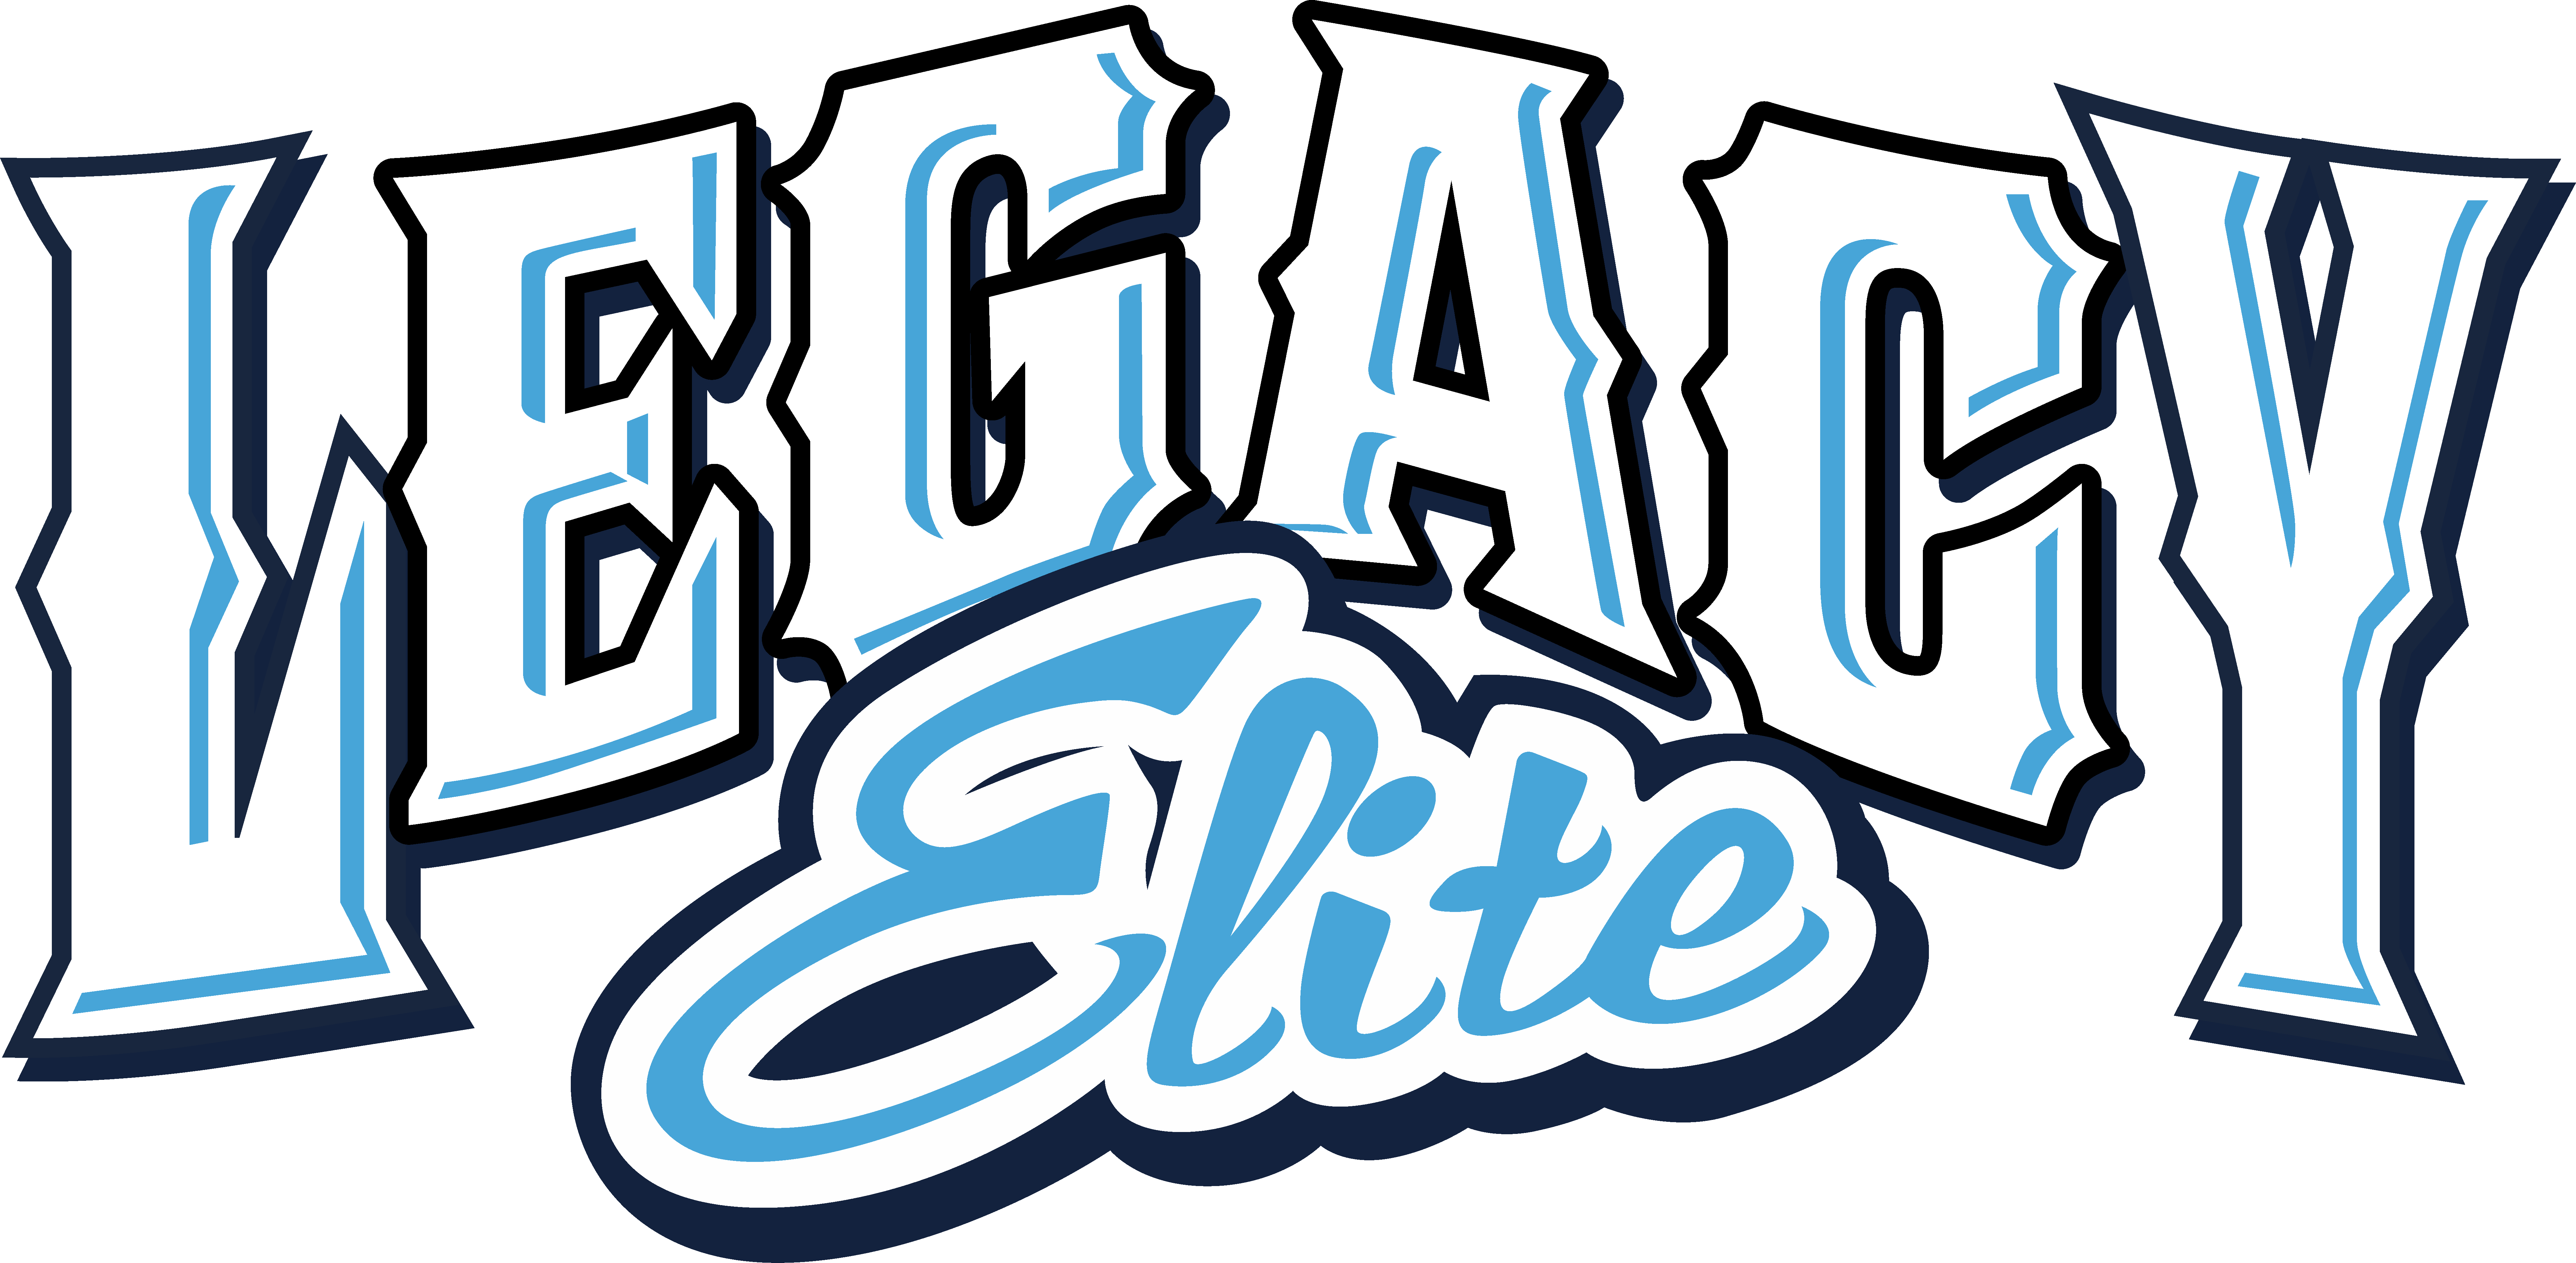 Team Roster VA Legacy Elite Softball